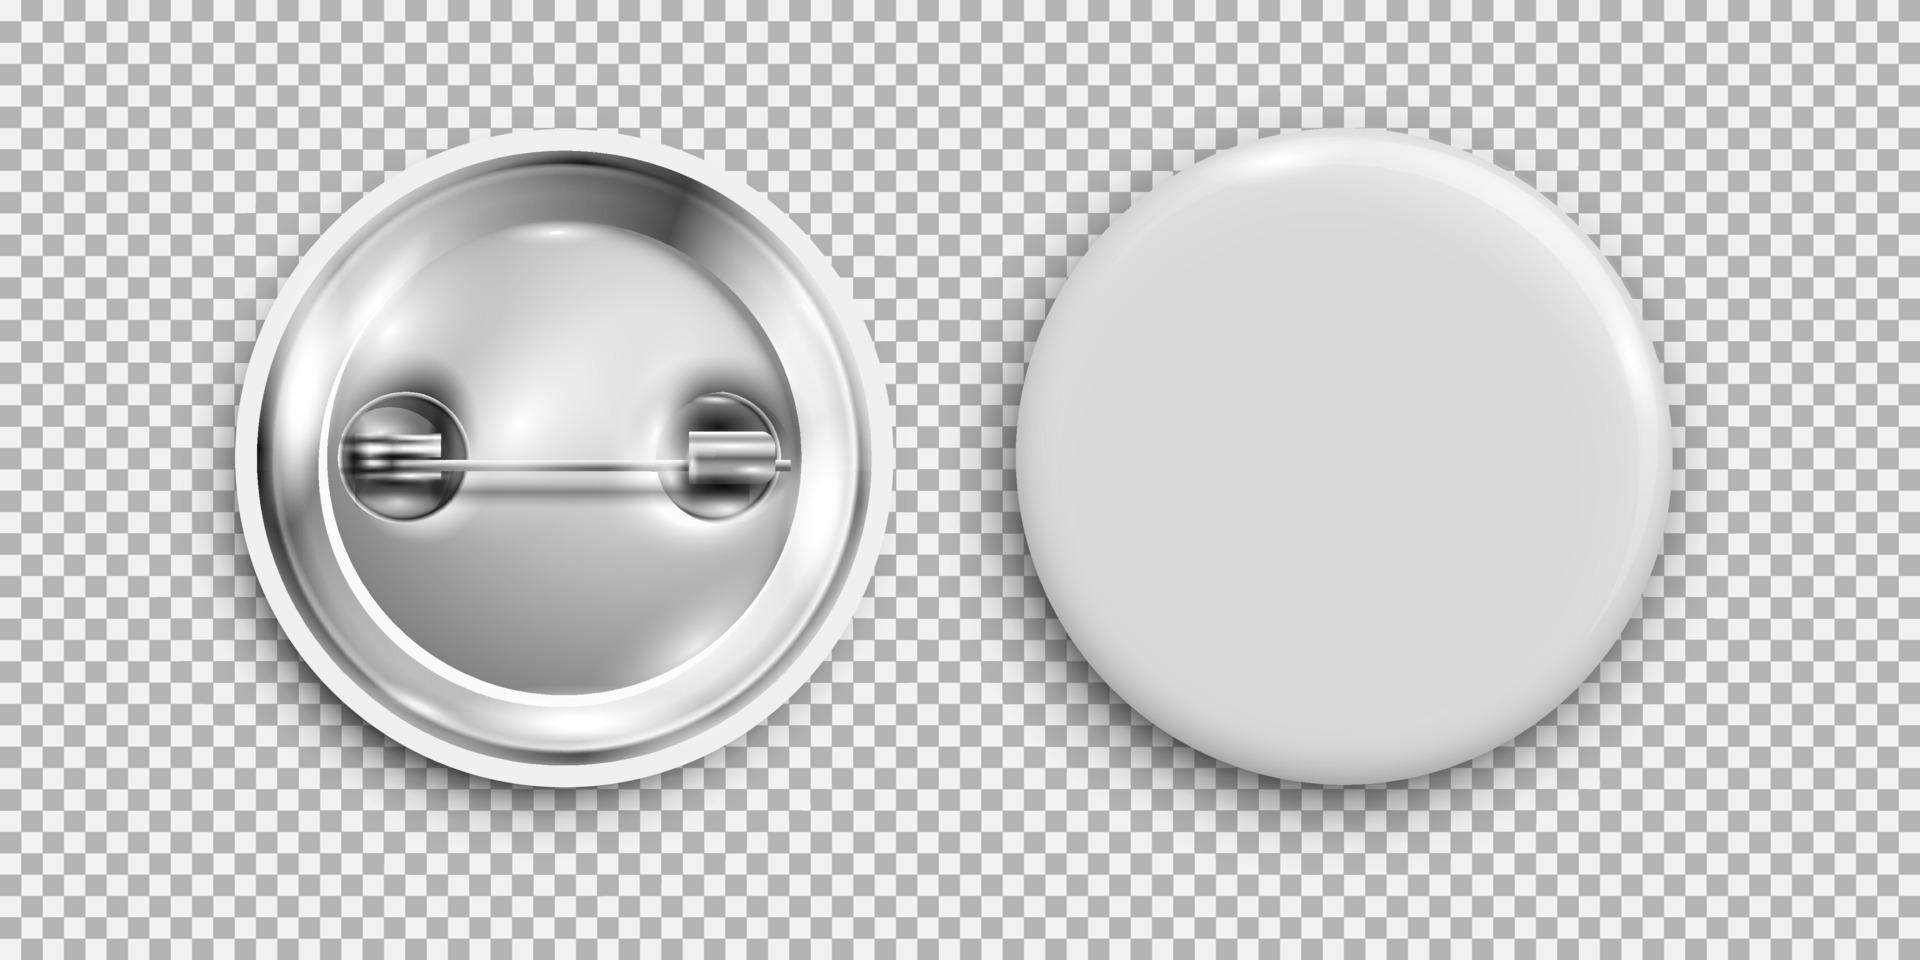 badge vuoto, pulsante rotondo bianco 3d, pulsante pin isolato vettore